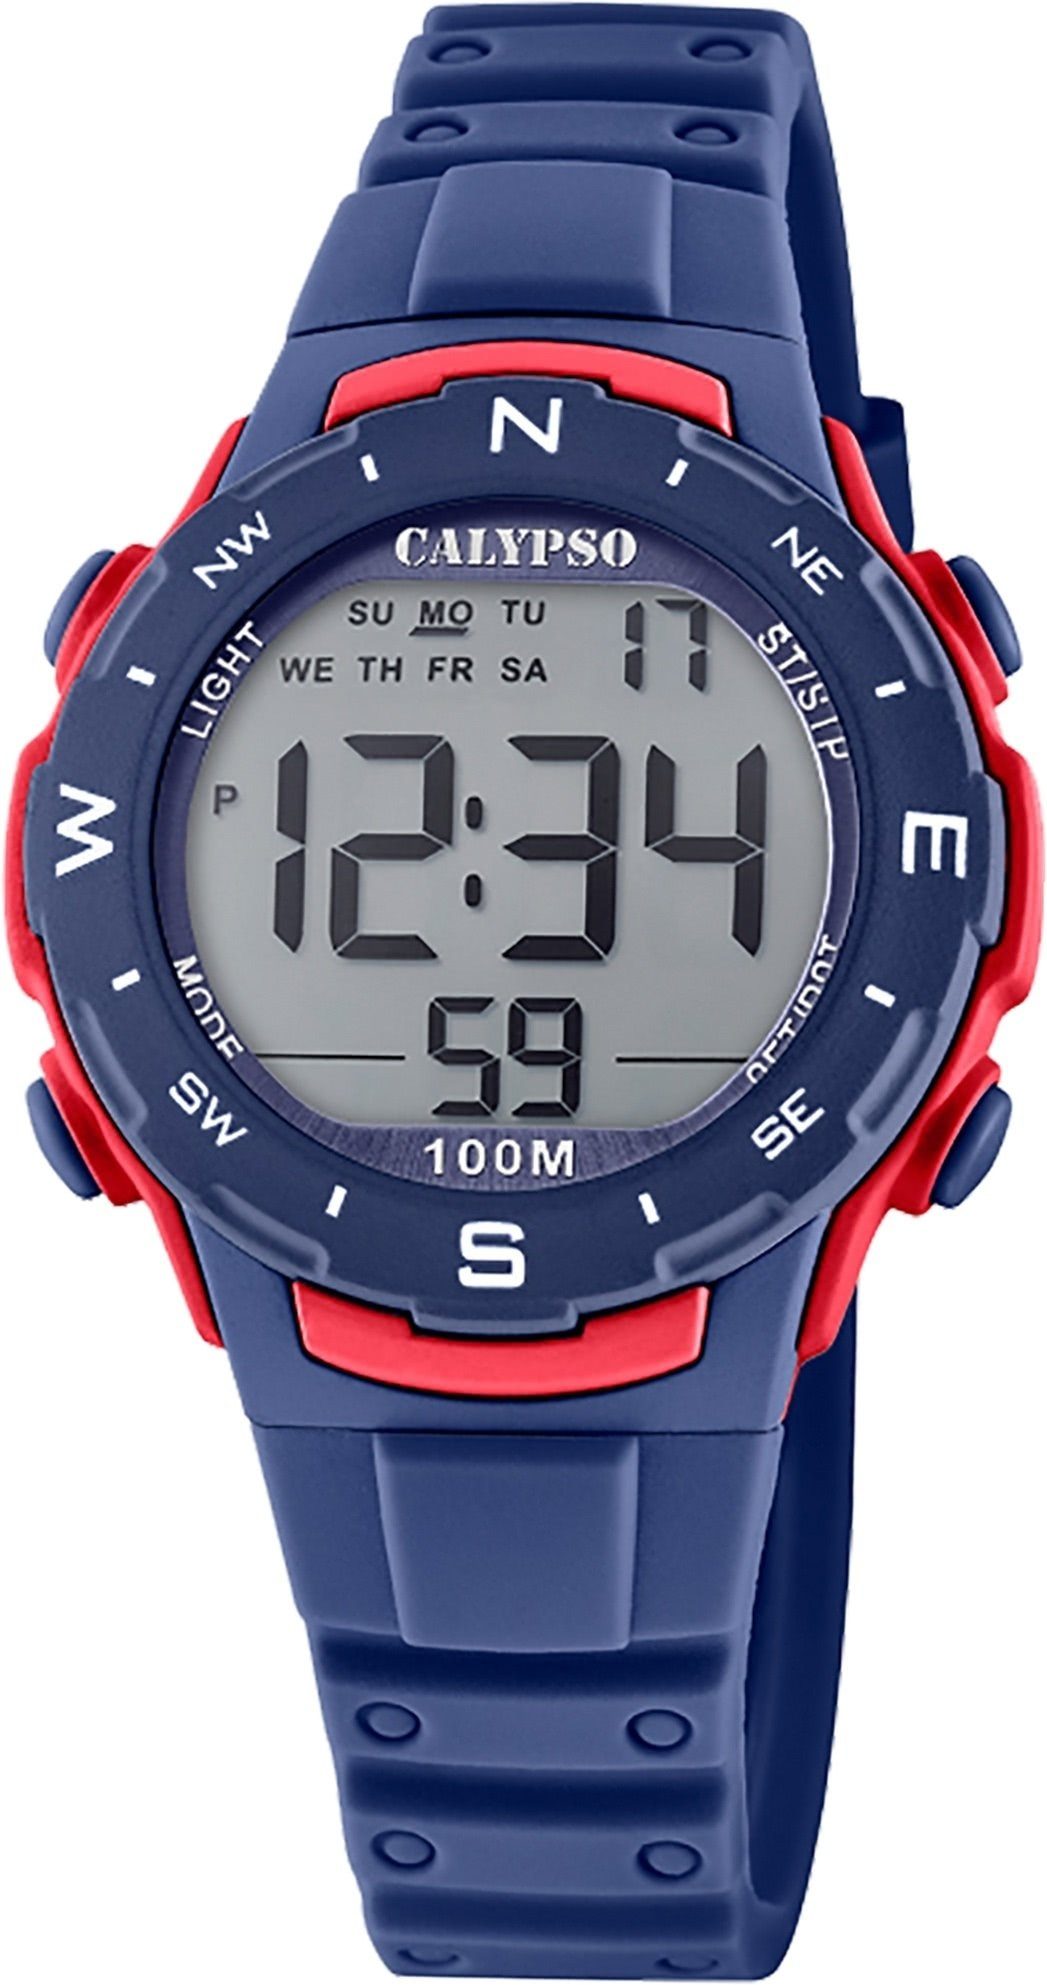 CALYPSO WATCHES Digitaluhr Calypso Unisex Uhr Digital K5801/4, (Digitaluhr), Damen, Herrenuhr rund, mittel (ca. 35mm) Kunststoffband, Sport-Style